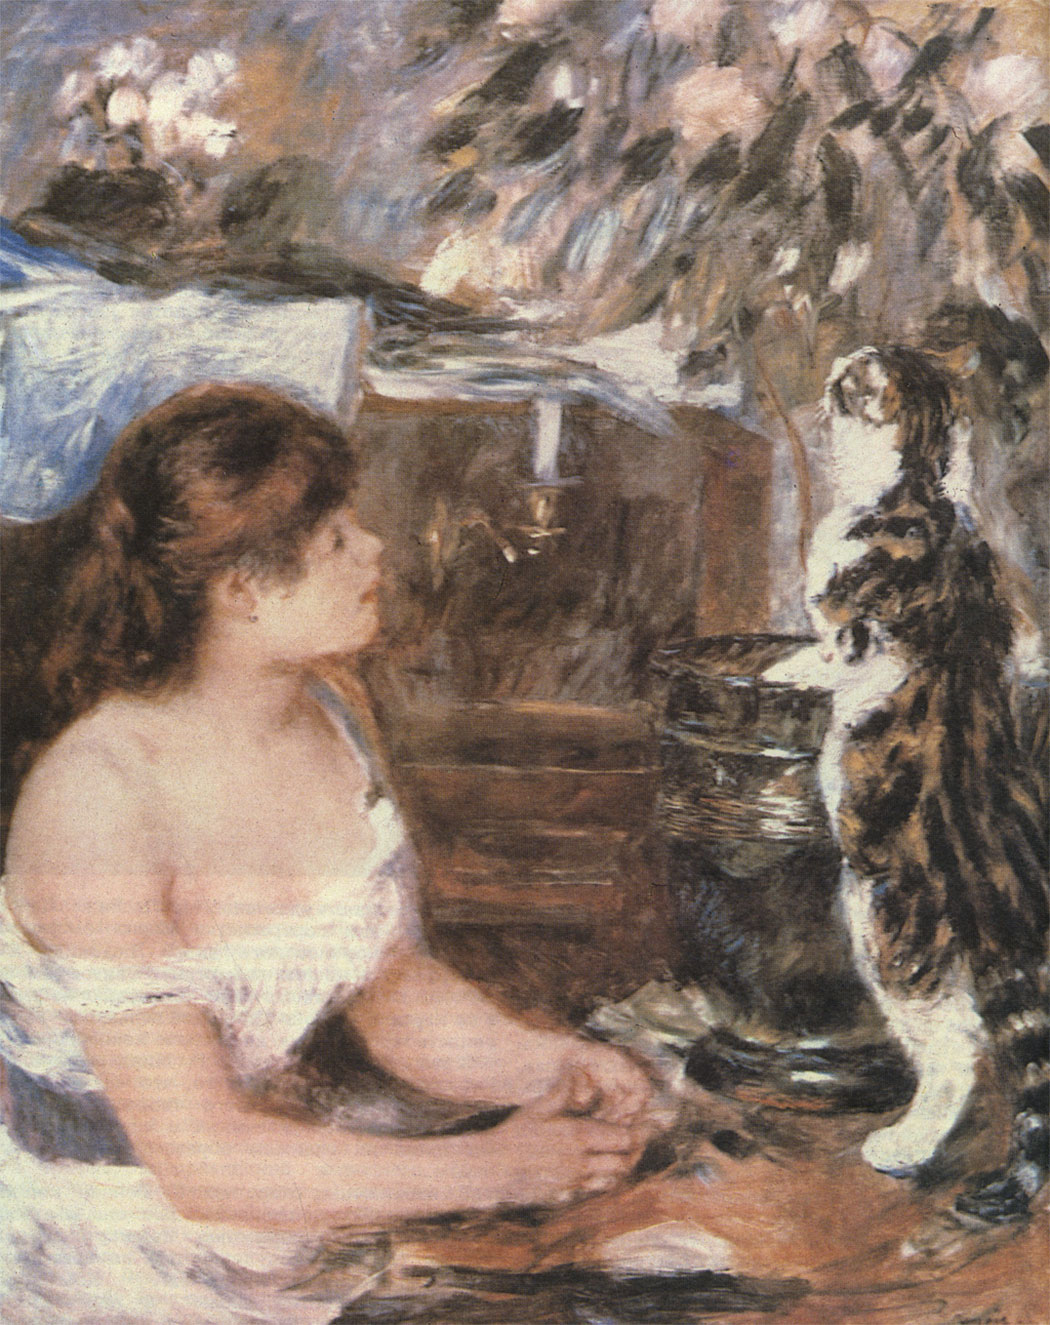 Женщины и кошки - благодатная тема для художников. У тех и других много общего. У О. Ренуара кошки самые женственные